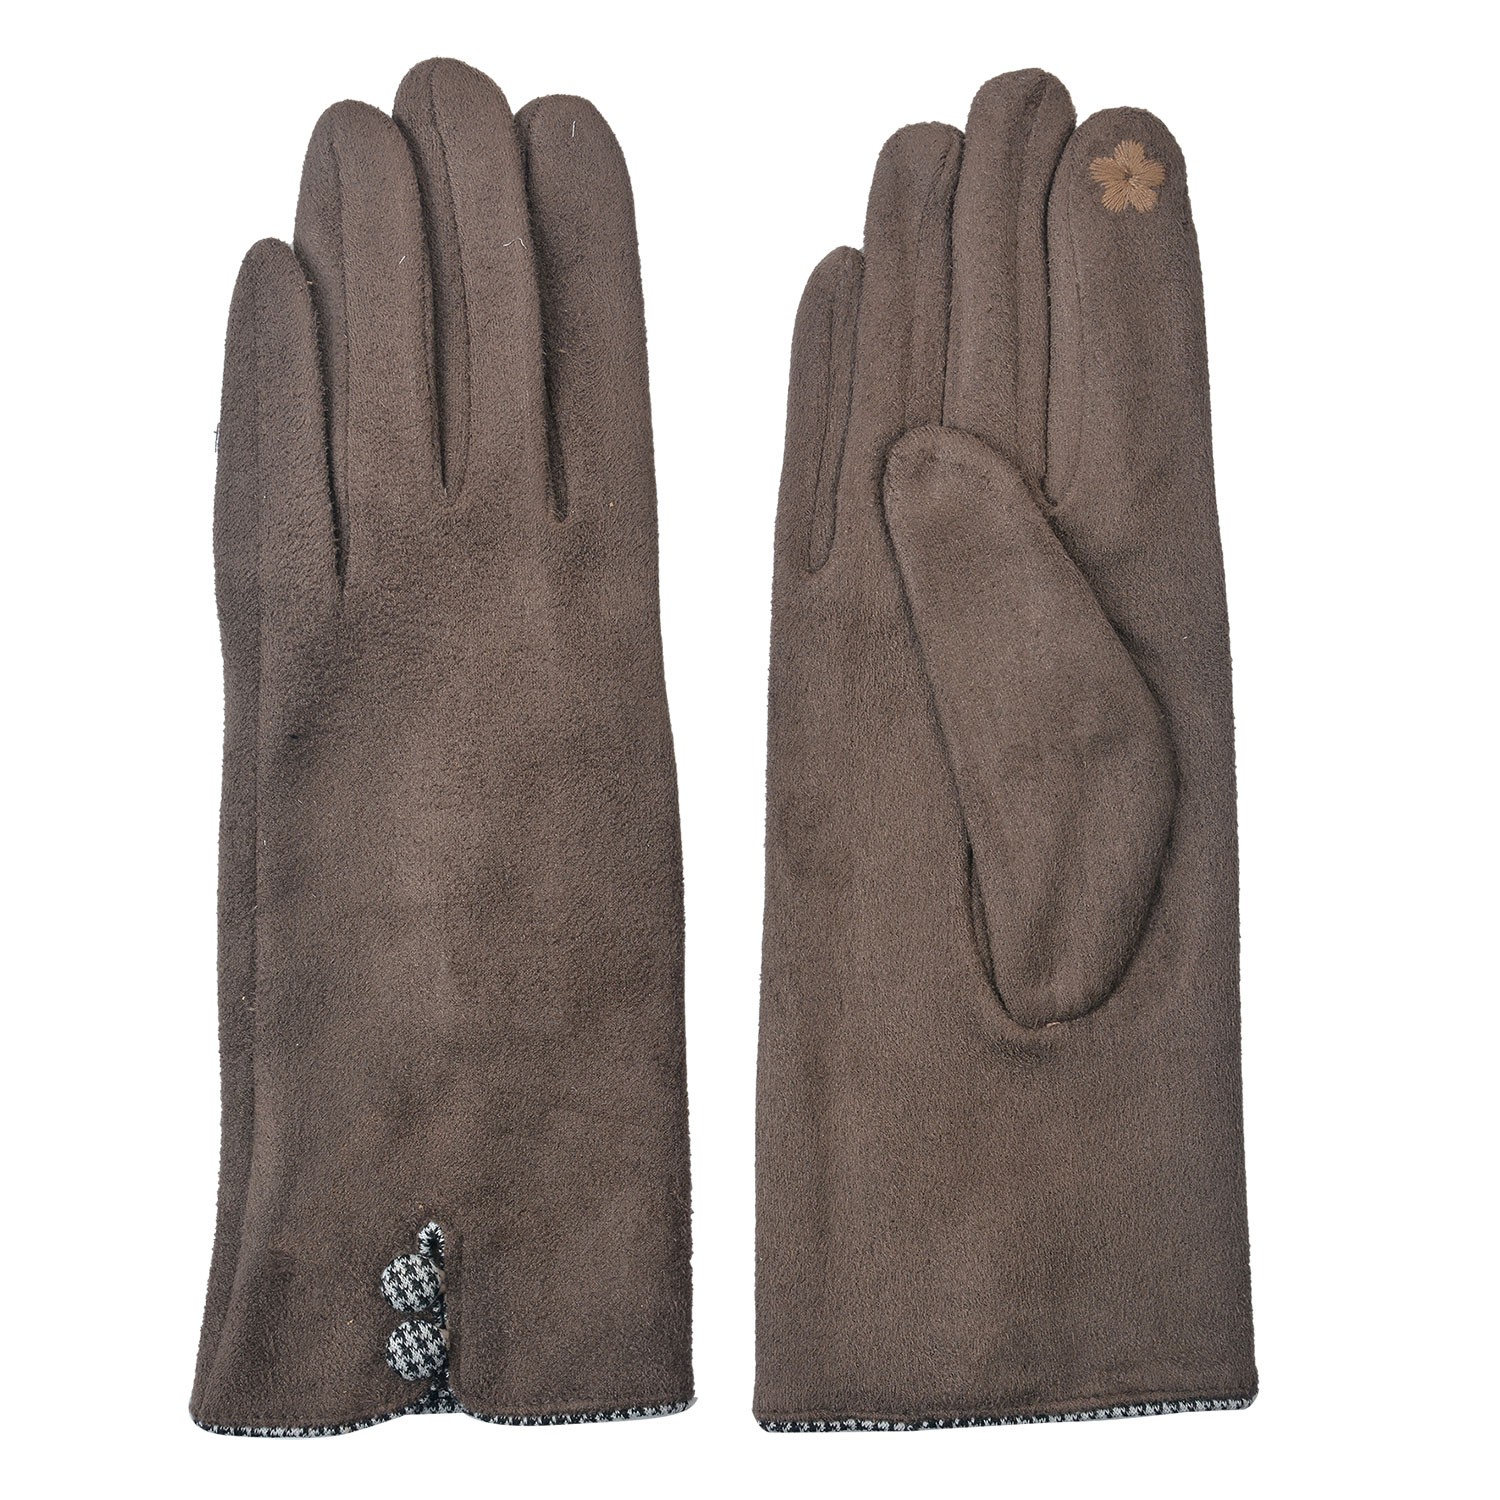 Hnědé dámské rukavice s knoflíky - 8*24 cm JZGL0036CH